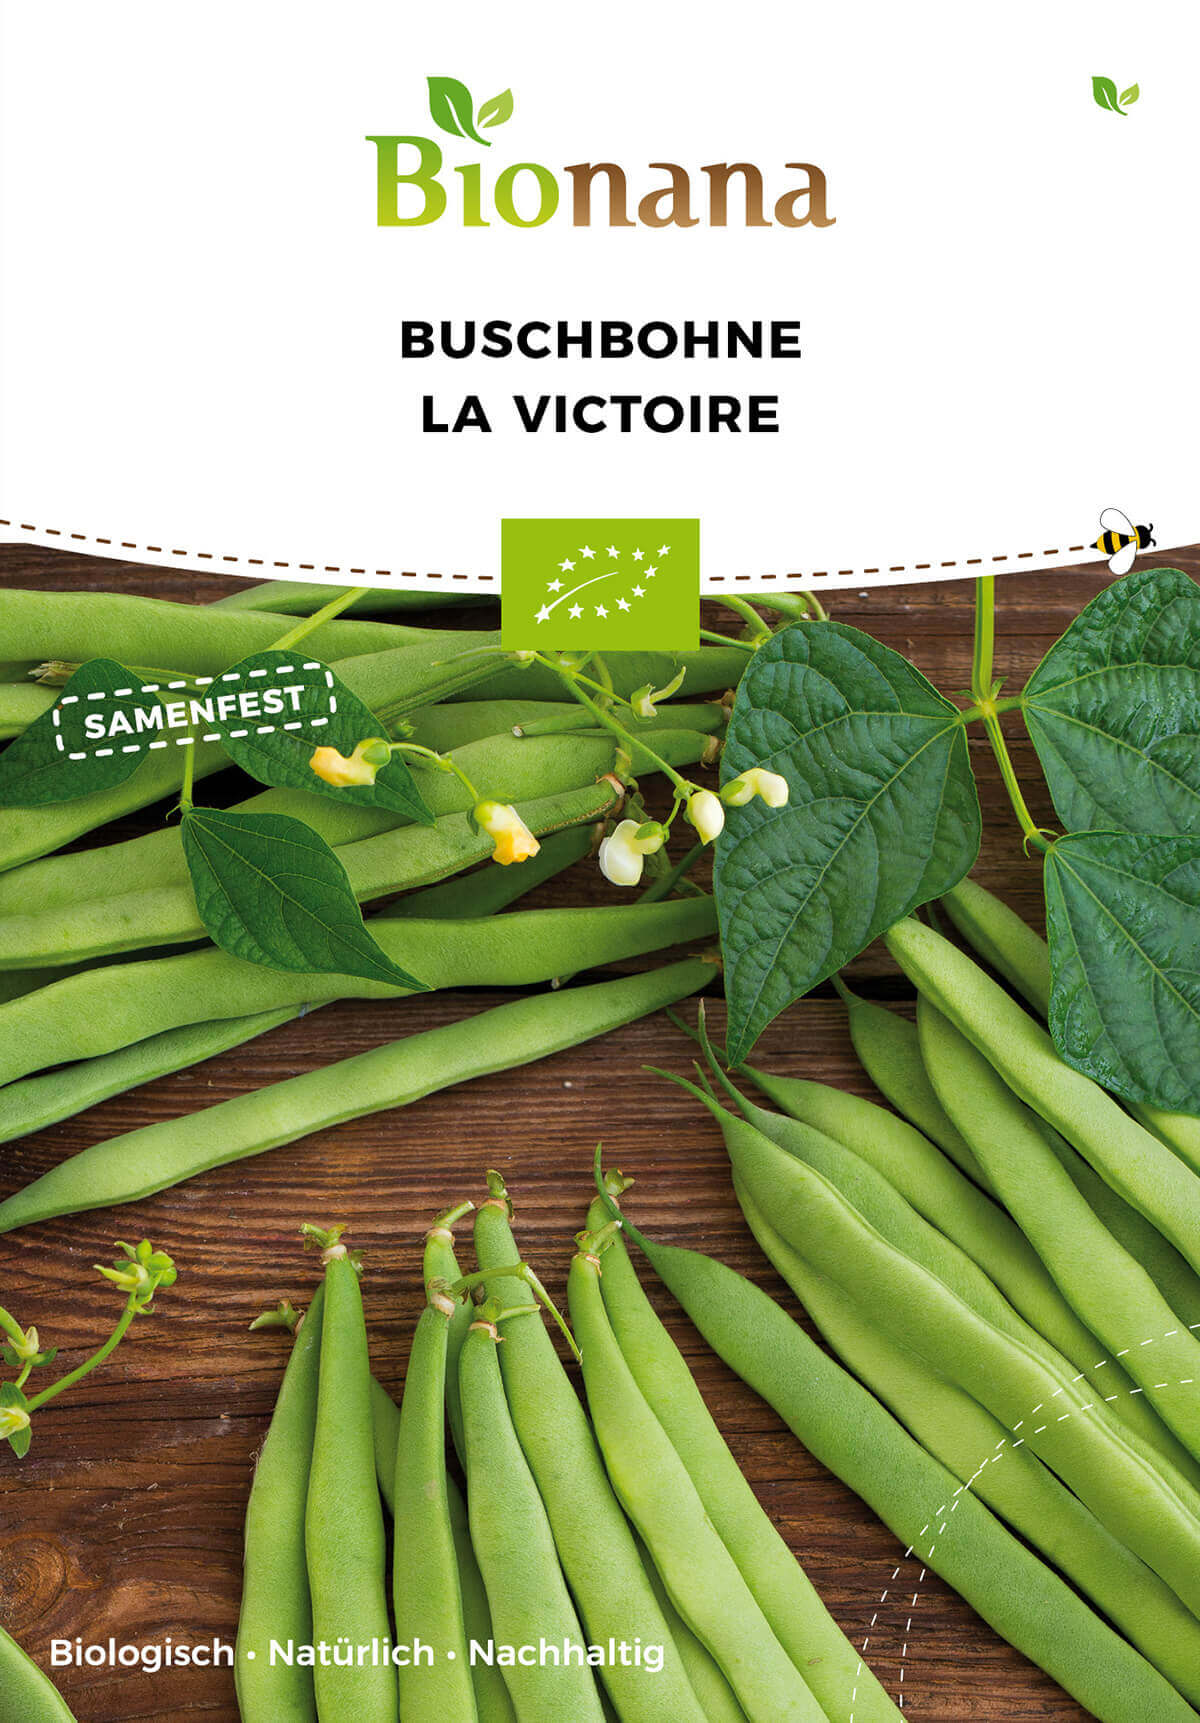 Buschbohne La Victoire | BIO Buschbohnensamen von Bionana